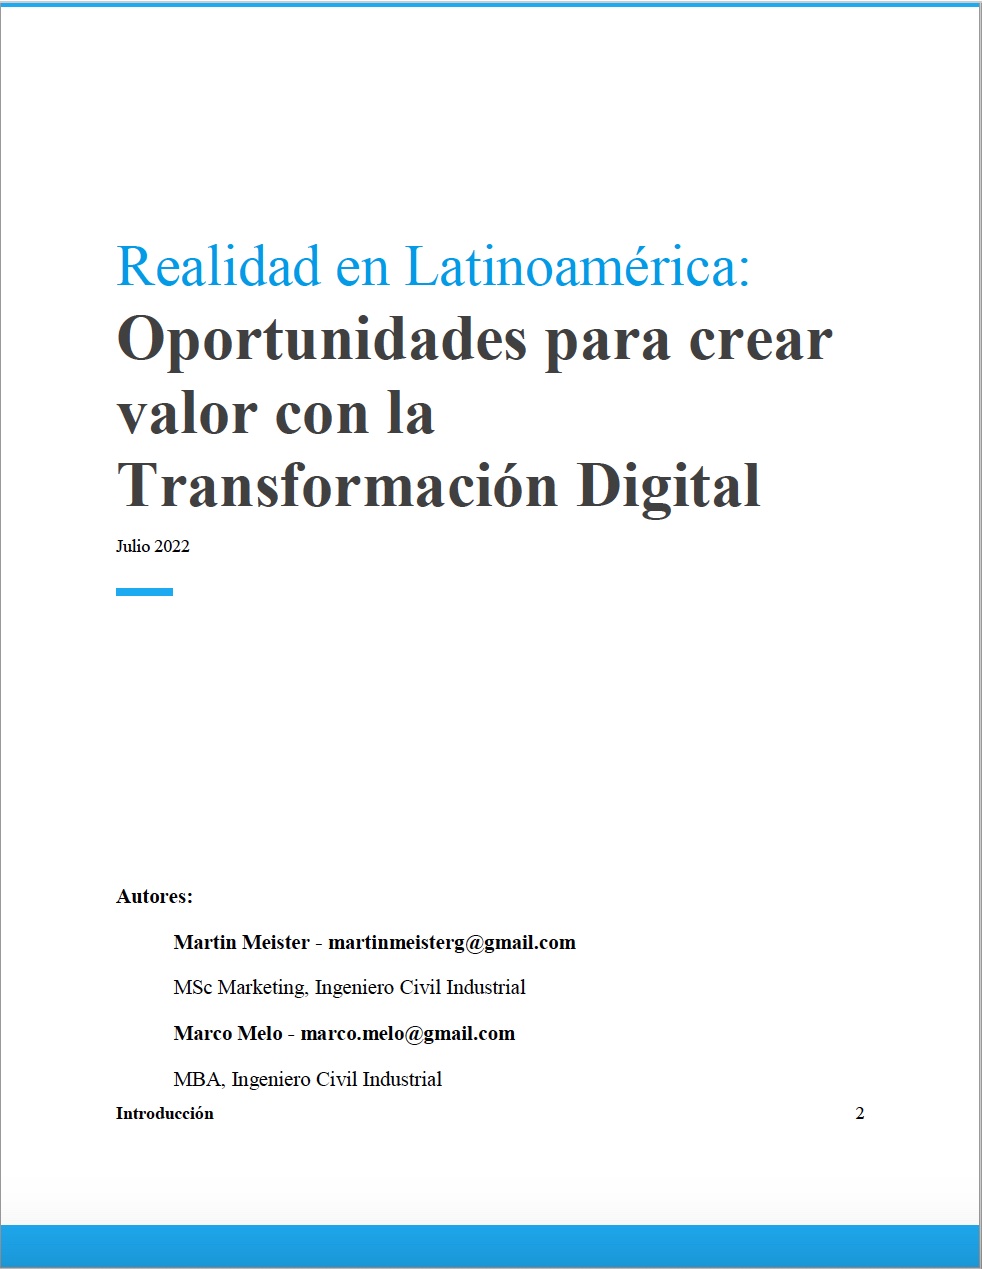 Oportunidades_para_crear_valor_con_la_transformacion_digital